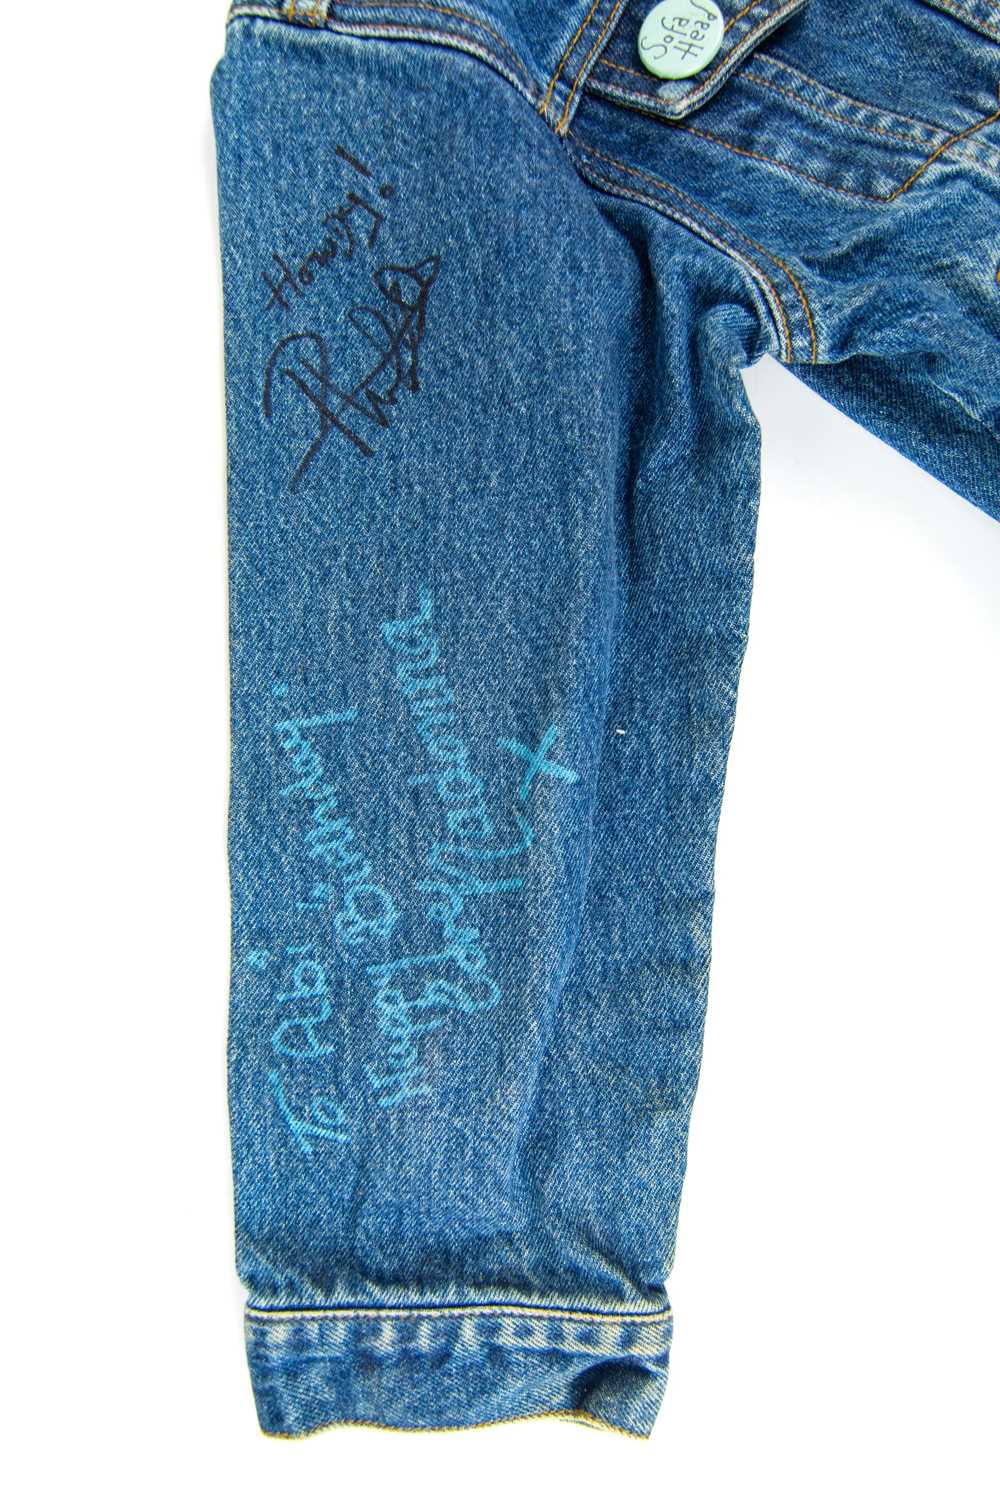 An extensively signed 'Hard Rock Cafe' Las Vegas, denim jacket. - Image 4 of 14